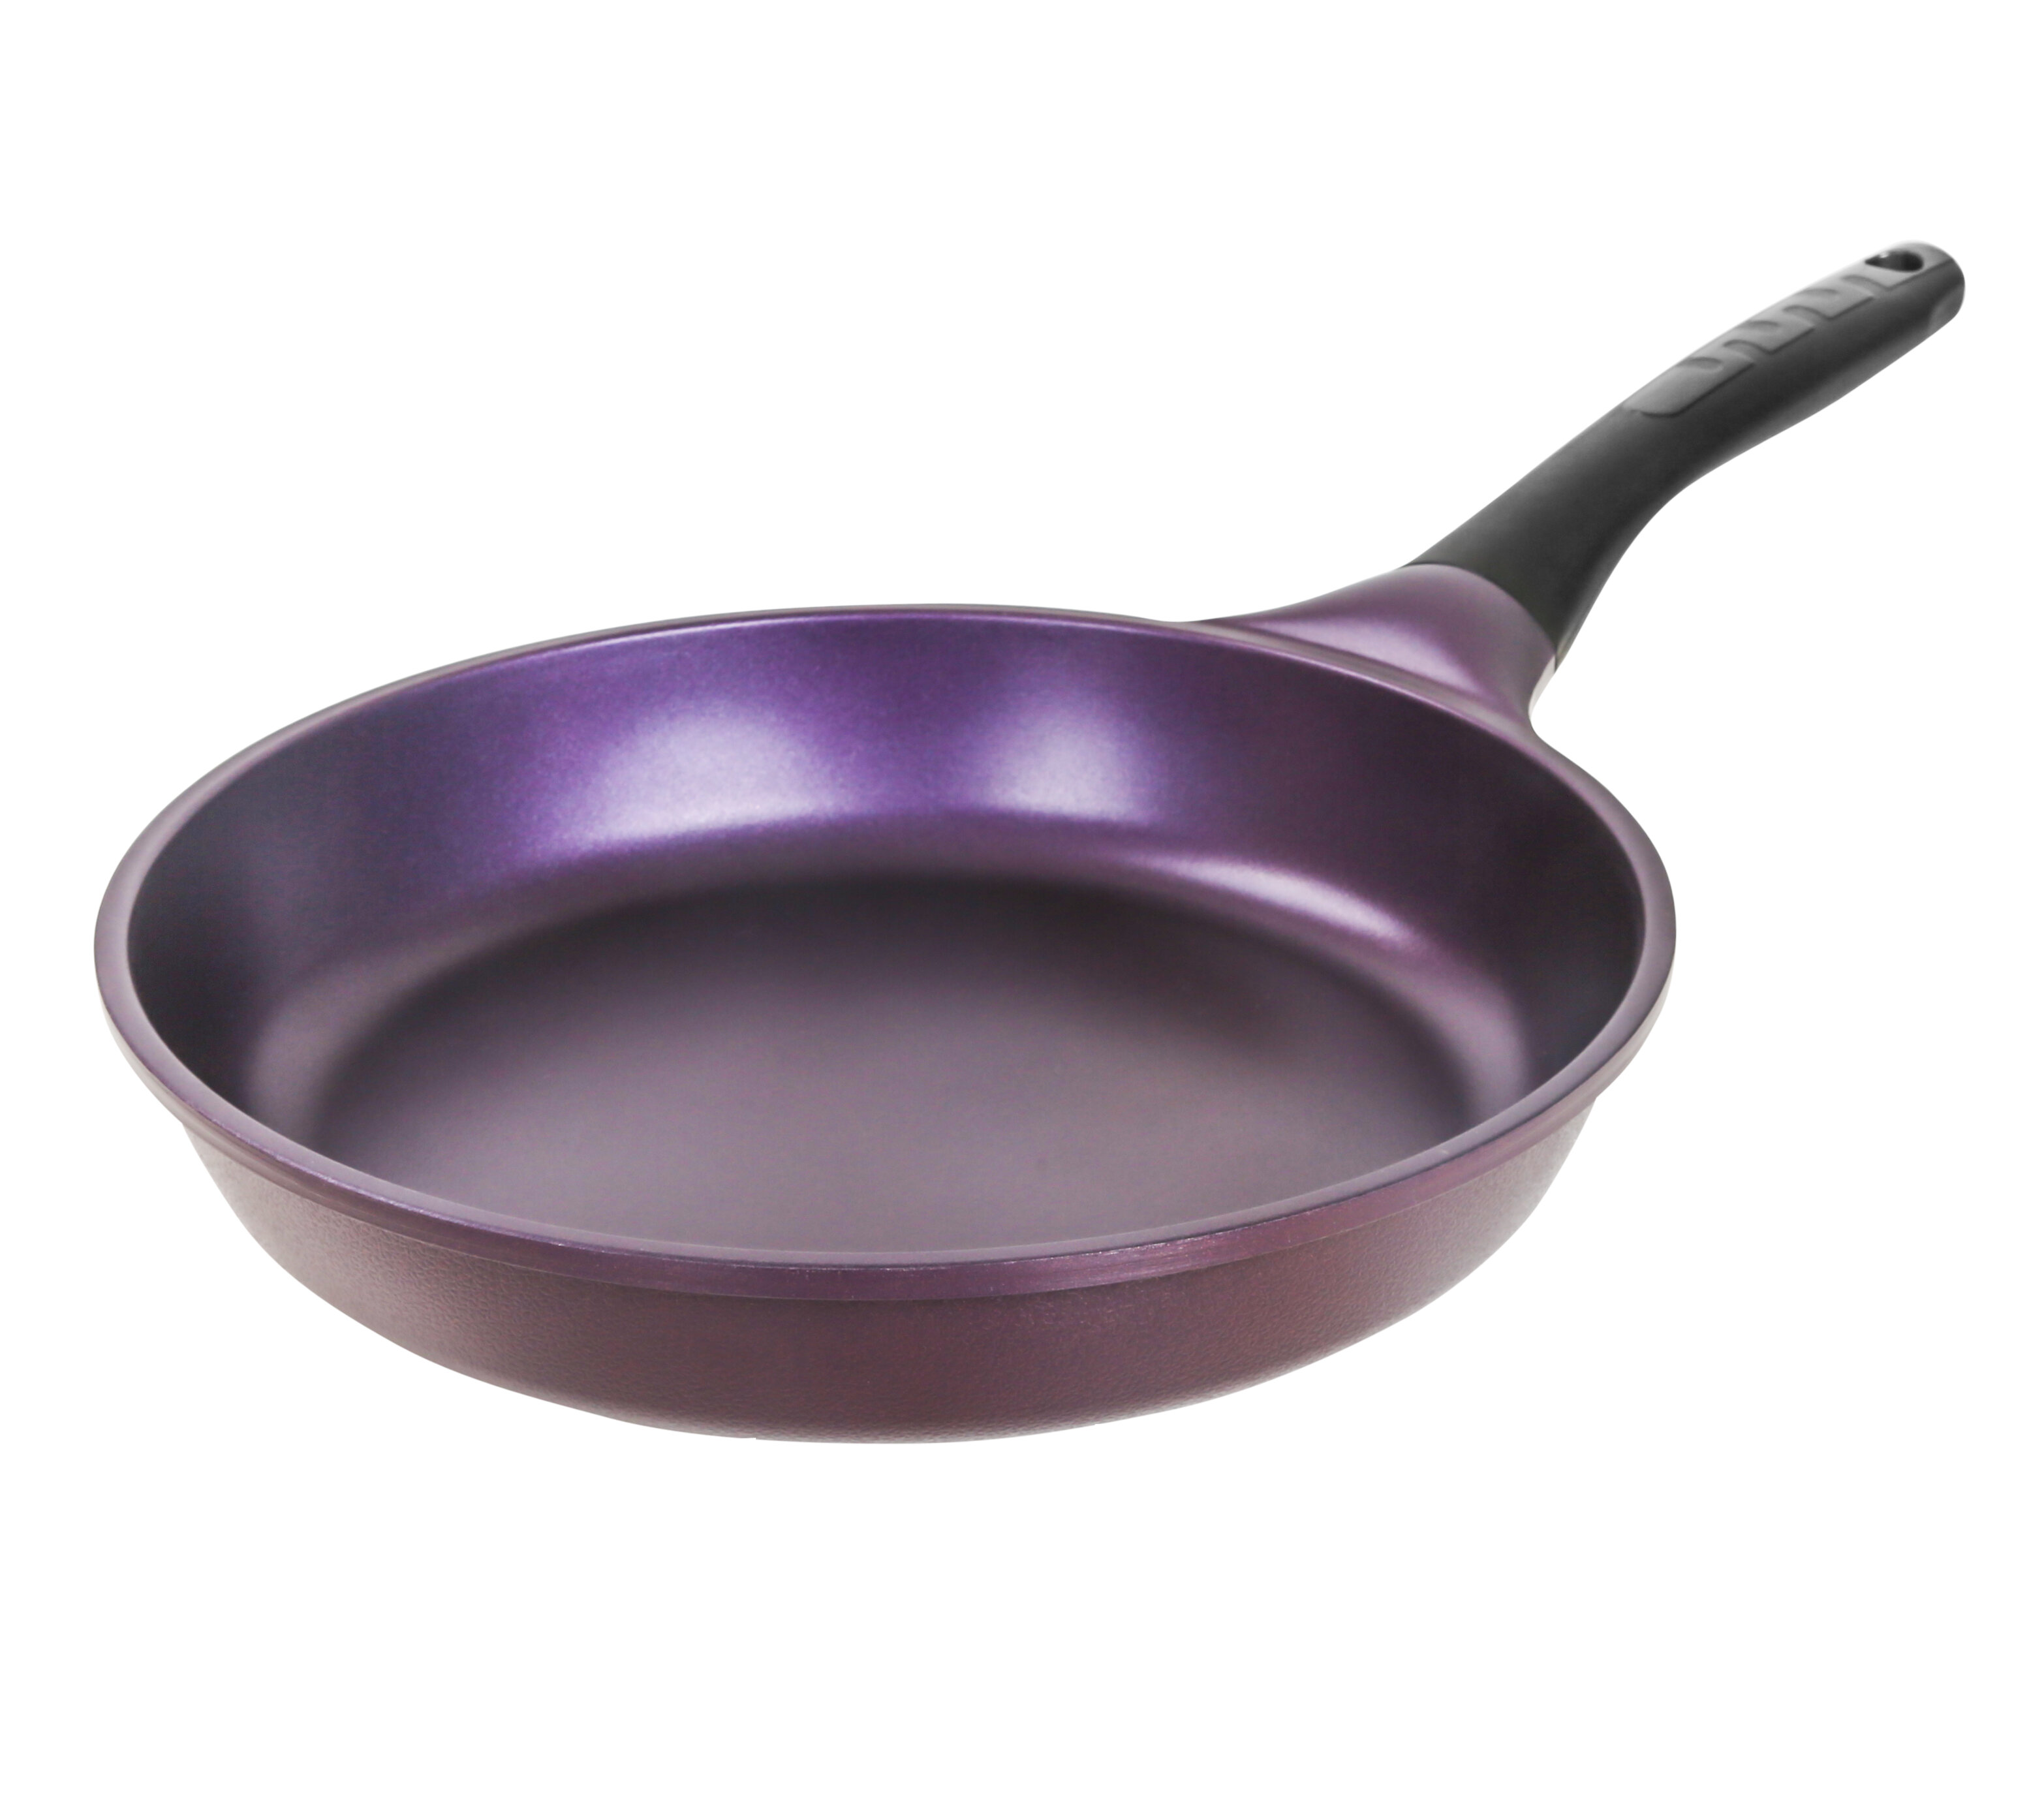 MICHELANGELO 12 Inch Frying Pan with Lid, Nonstick Copper Frying Pan with  Ceramic Interior, Nonstick Frying Pans, Nonstick Skillet with Lid, Large